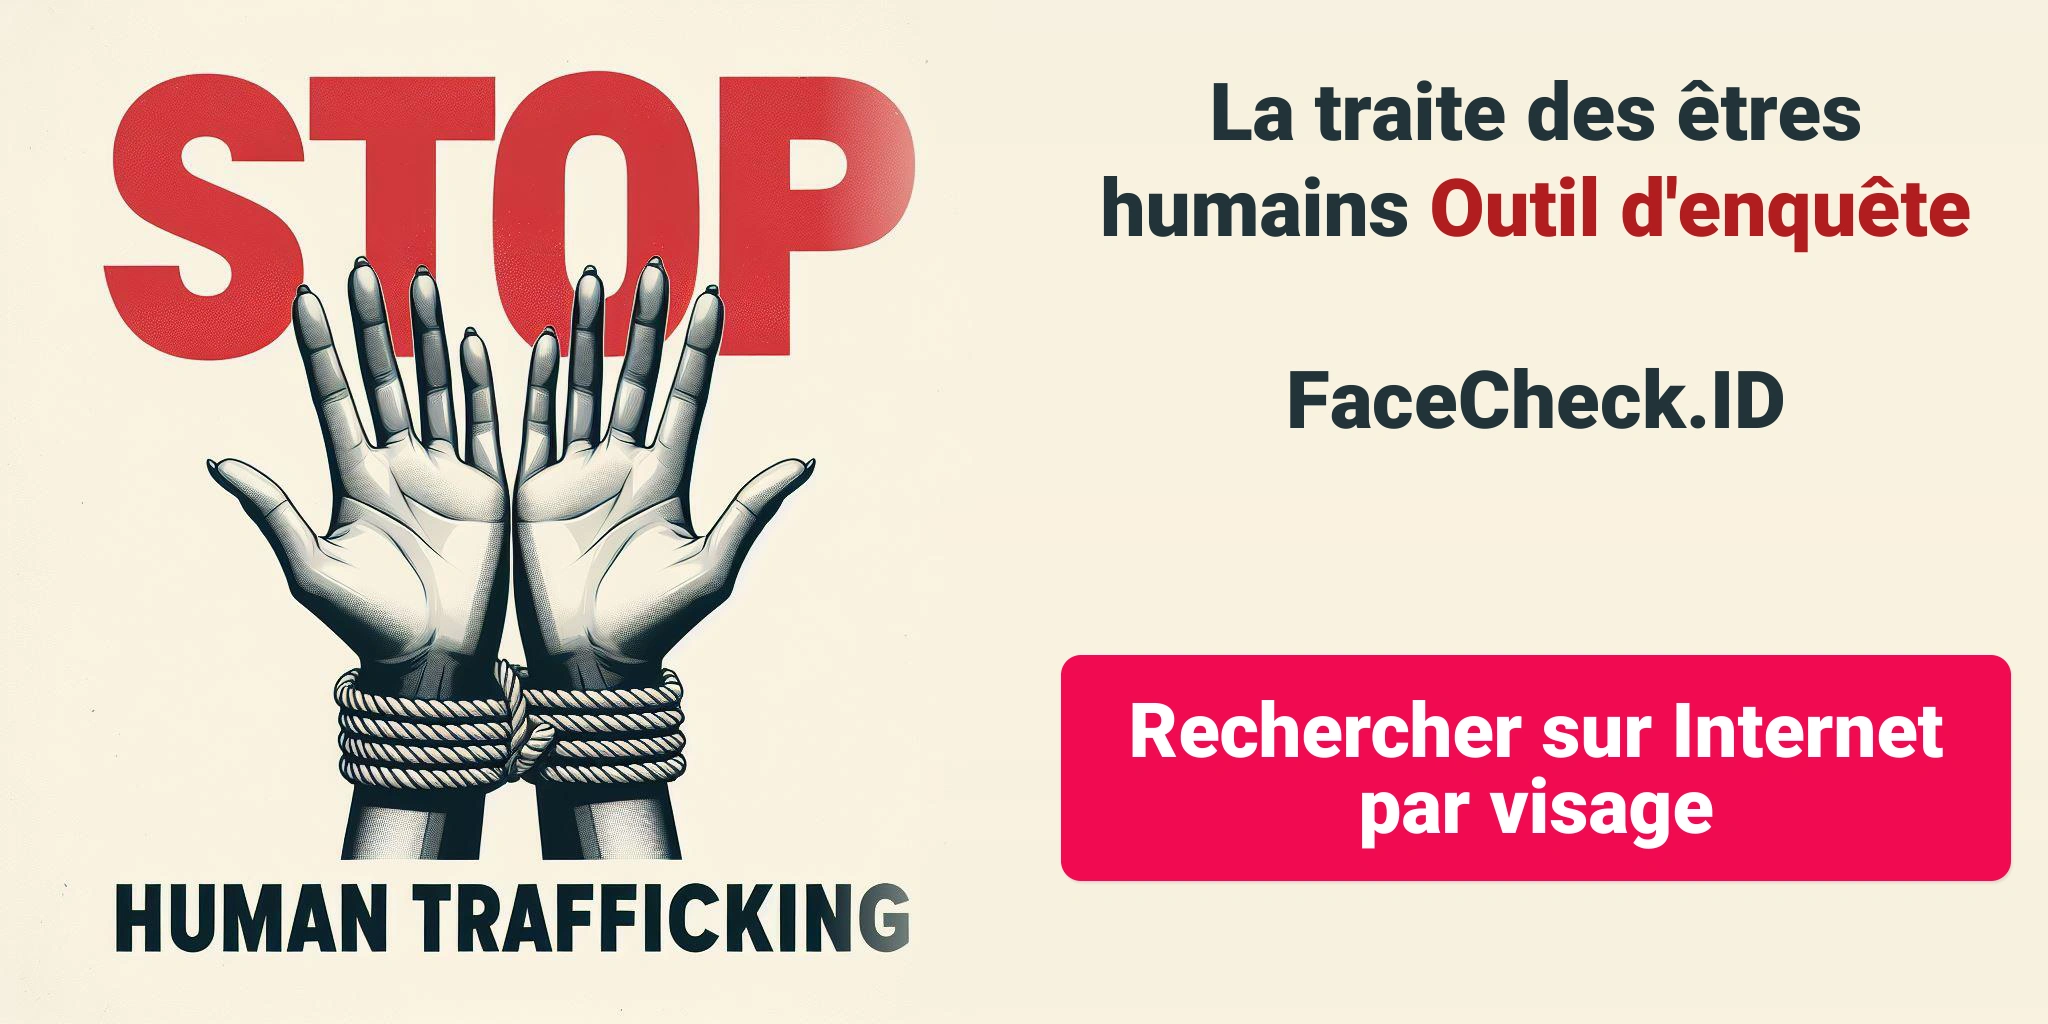 La traite des êtres humains Outil d'enquêteFaceCheck.ID Rechercher sur Internet par visage